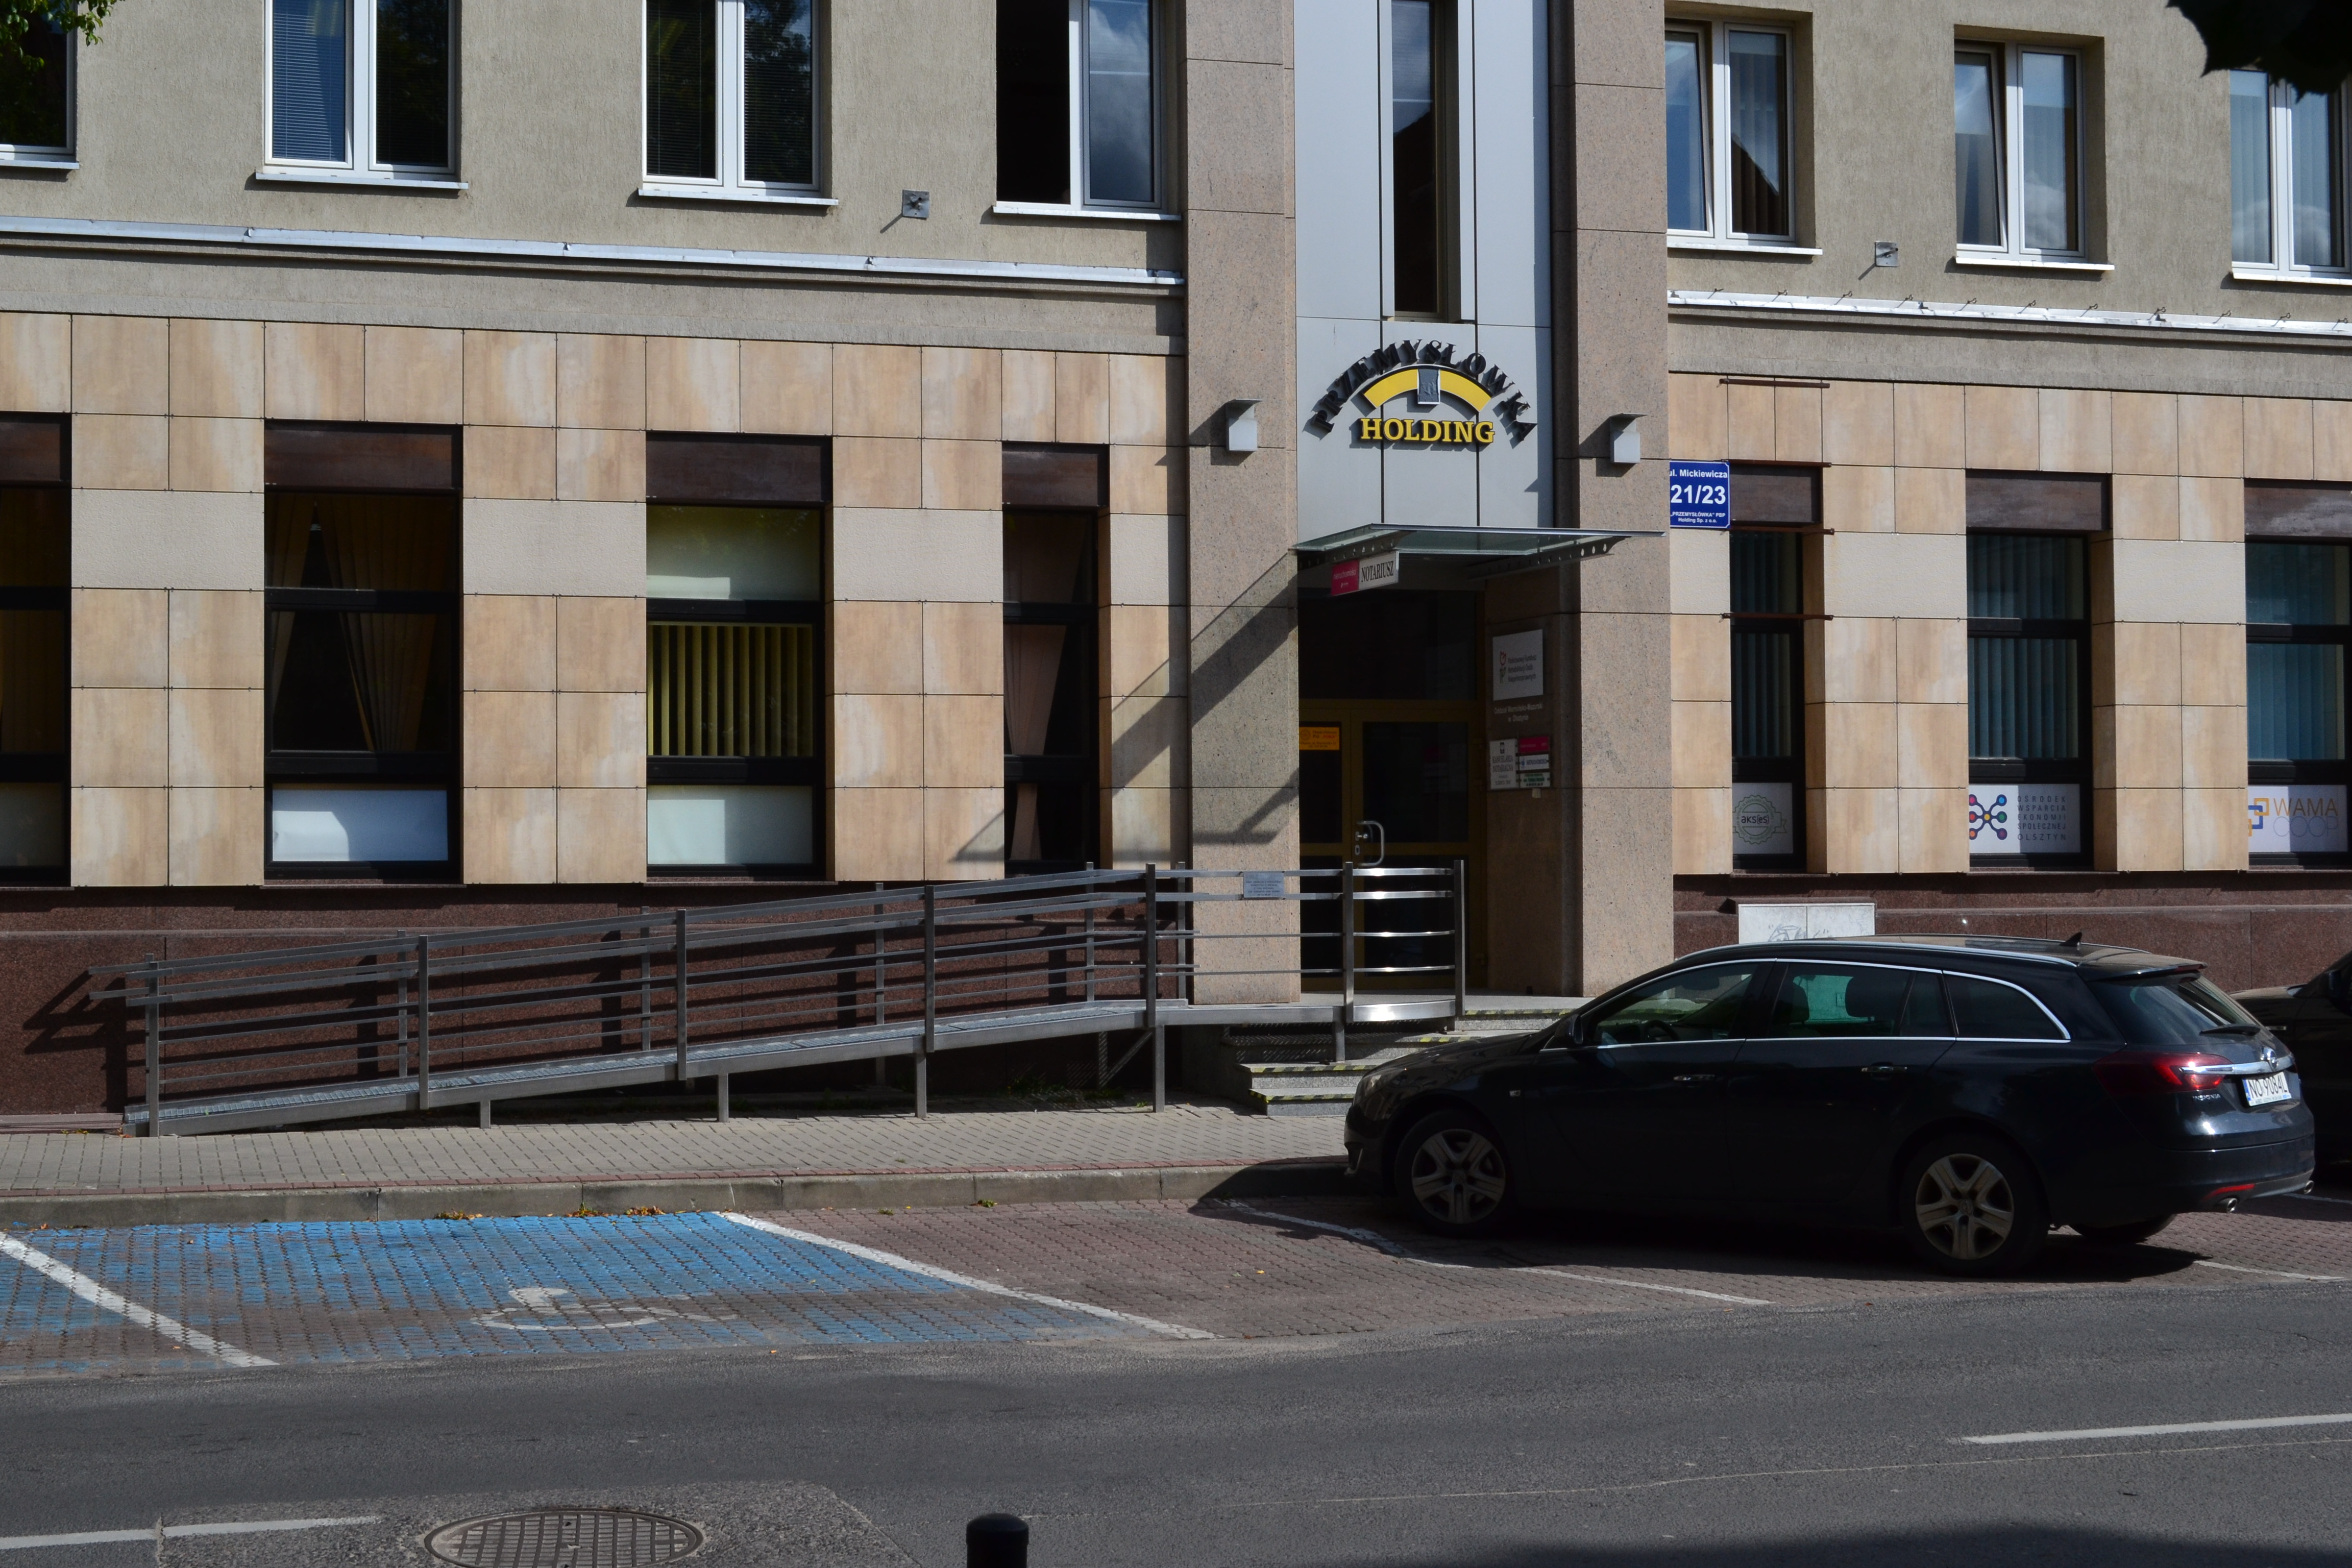 W tle budynek biurowy, obłożony kamieniem z pochylnią dla wózków. Nad wejściem napis żółtymi literami „Przemysłówka Holding”. Przed budynkiem zaparkowany samochód, a po lewej stronie do samochodu widoczne oznakowane miejsce parkingowe dla osoby niepełnosprawnej